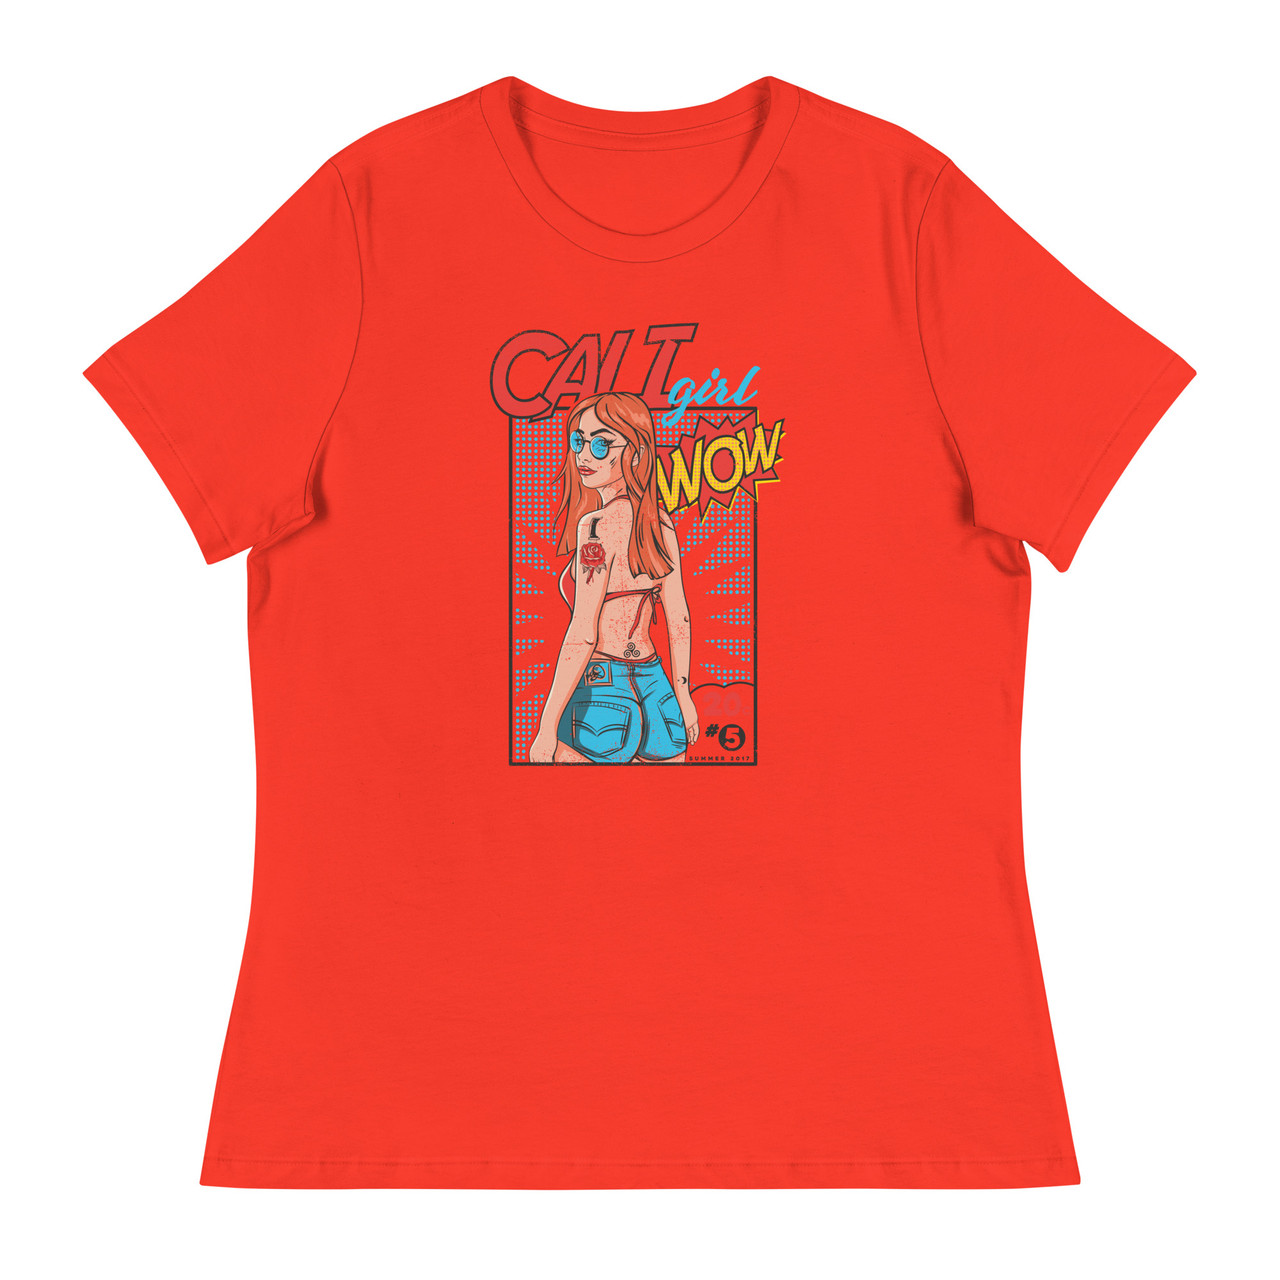 Cali Girl Women's Relaxed T-Shirt - Bella + Canvas 6400 